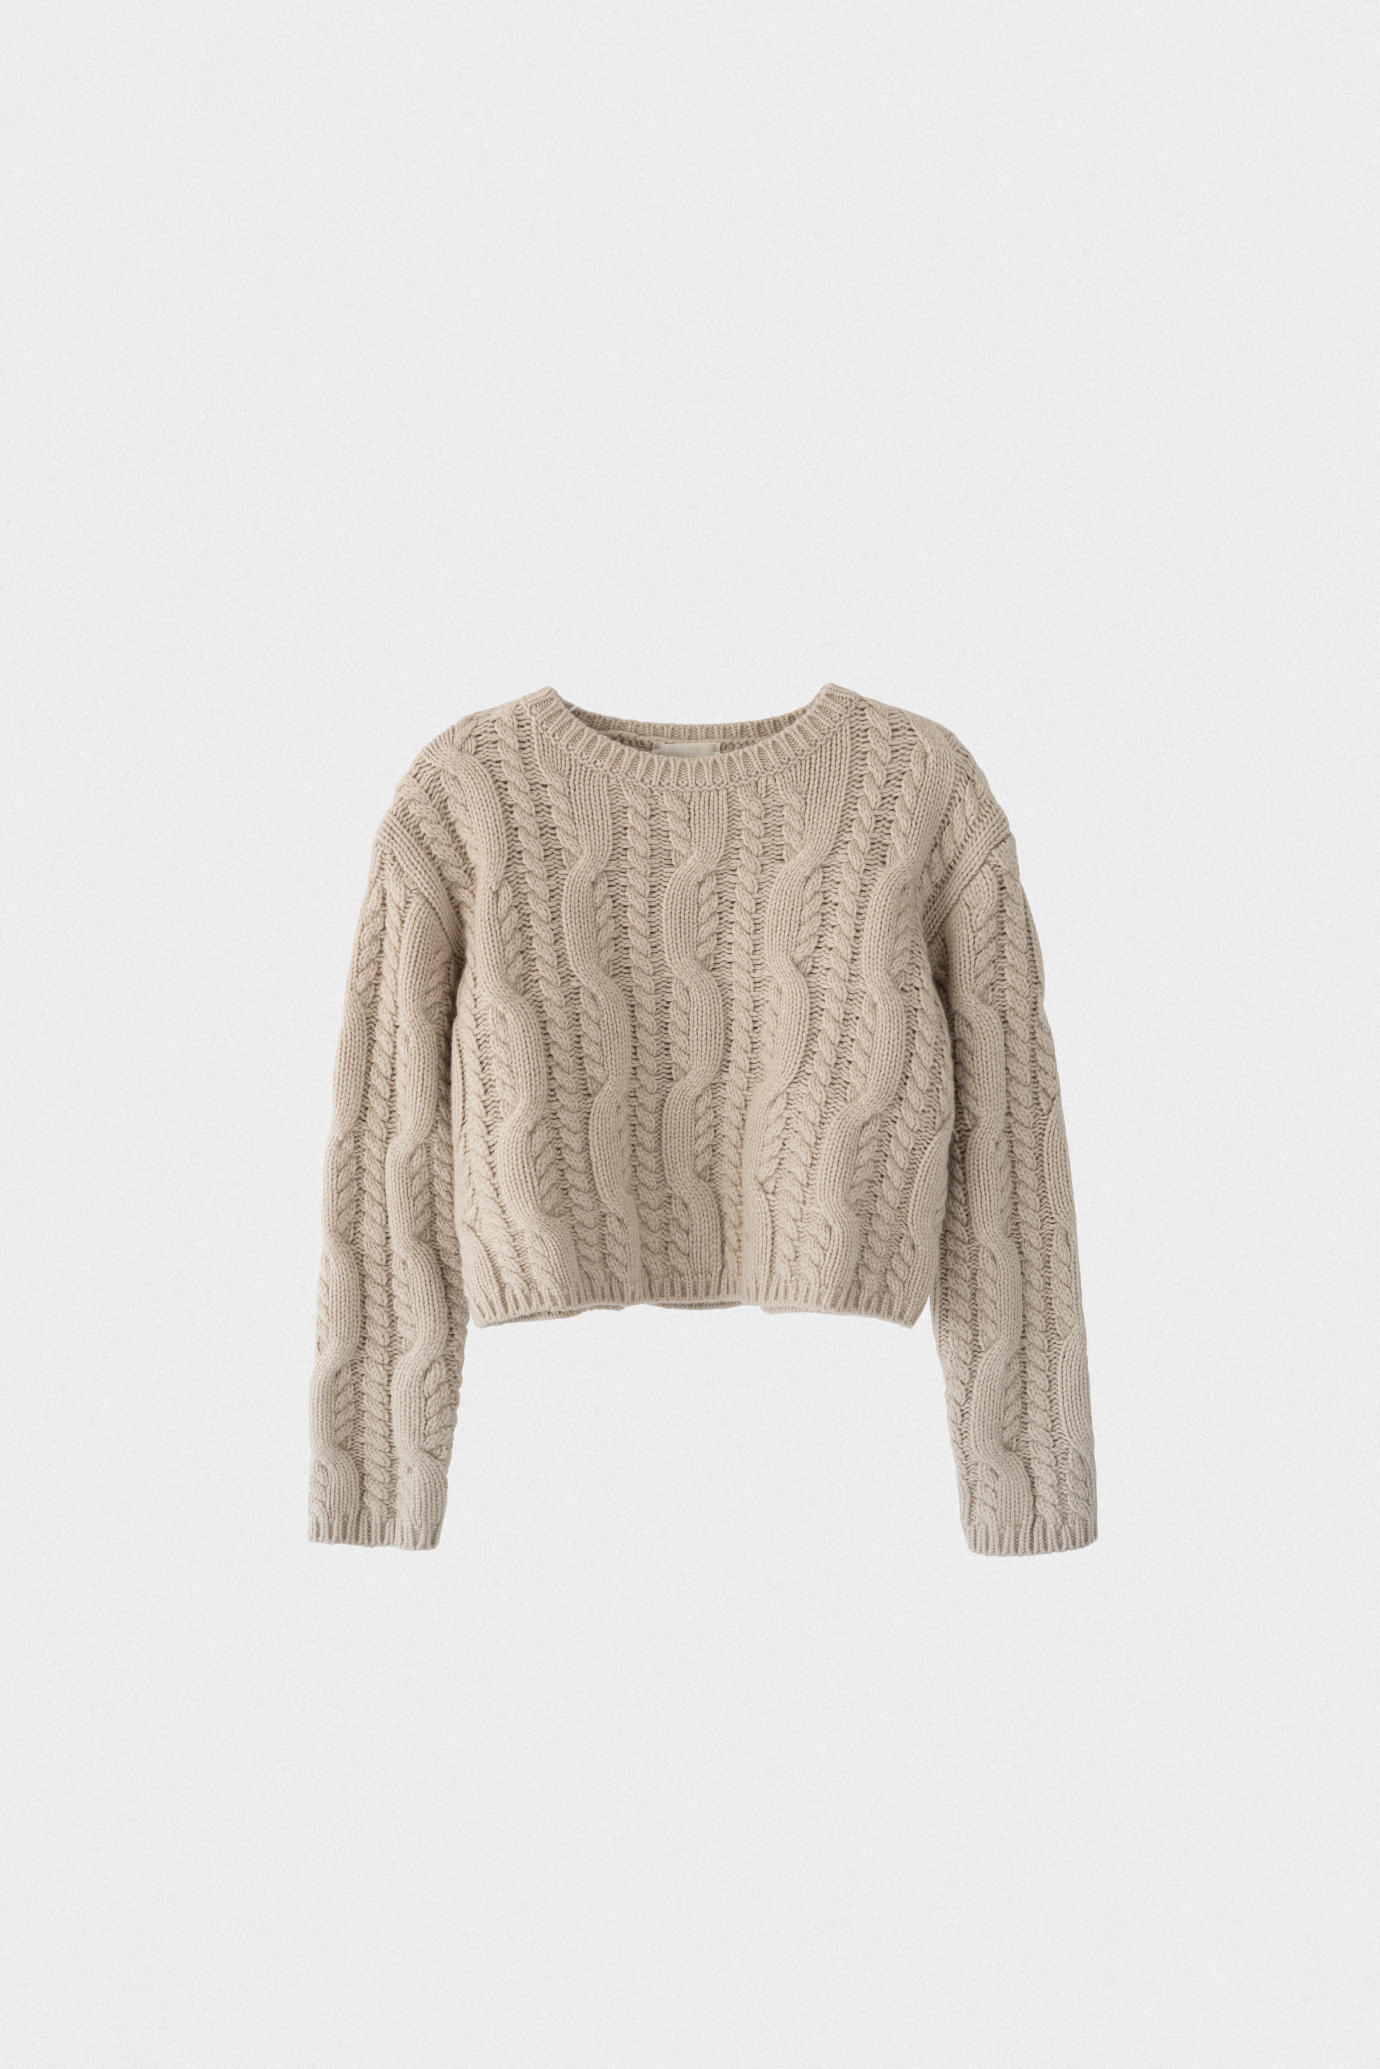 19120_Aren Sweater